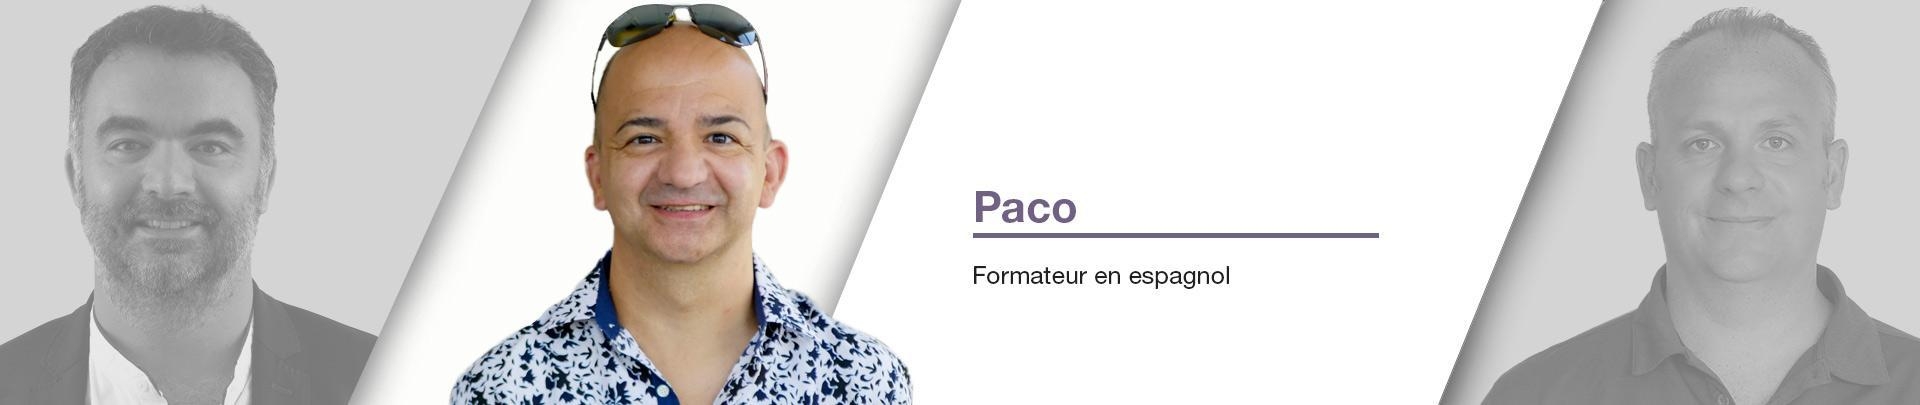 Paco  - Formateur en espagnol